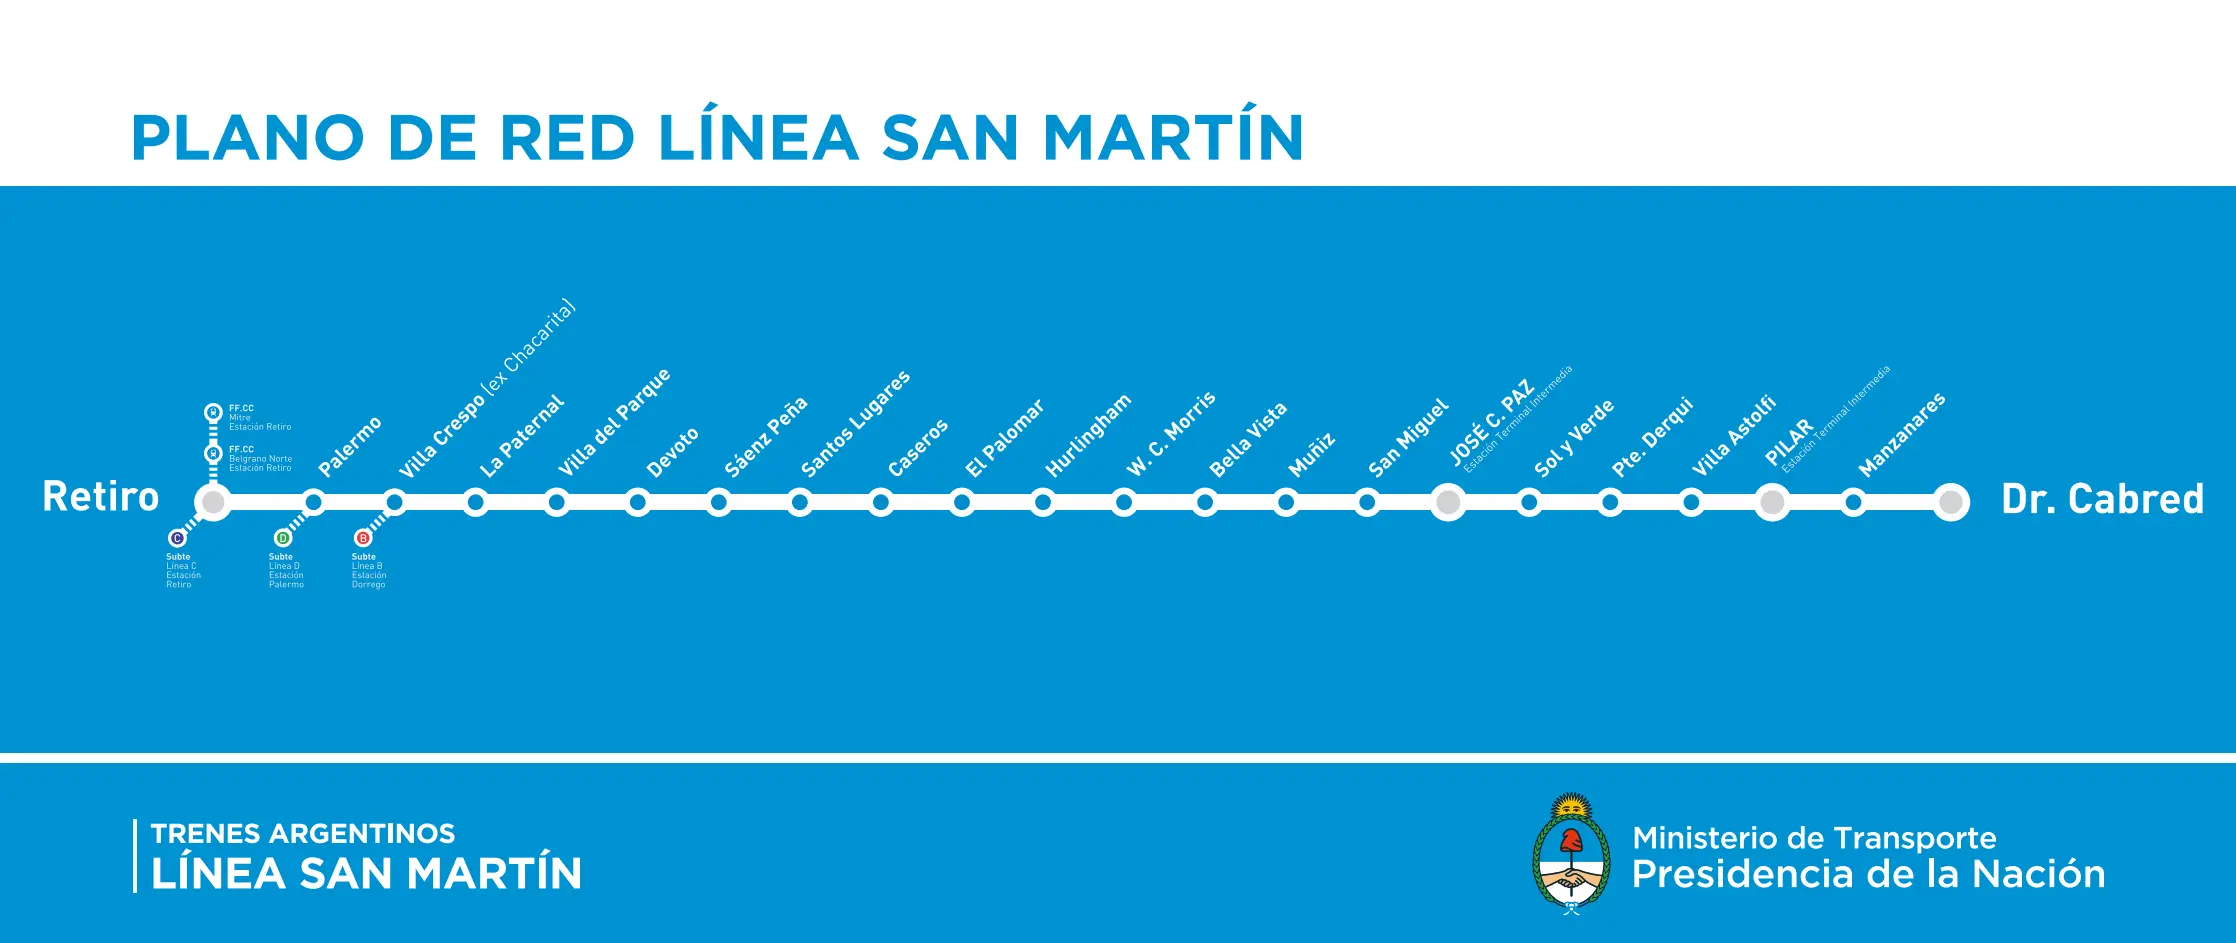 ferrocarril san martin estaciones - Cuántos ramales tiene el tren San Martín